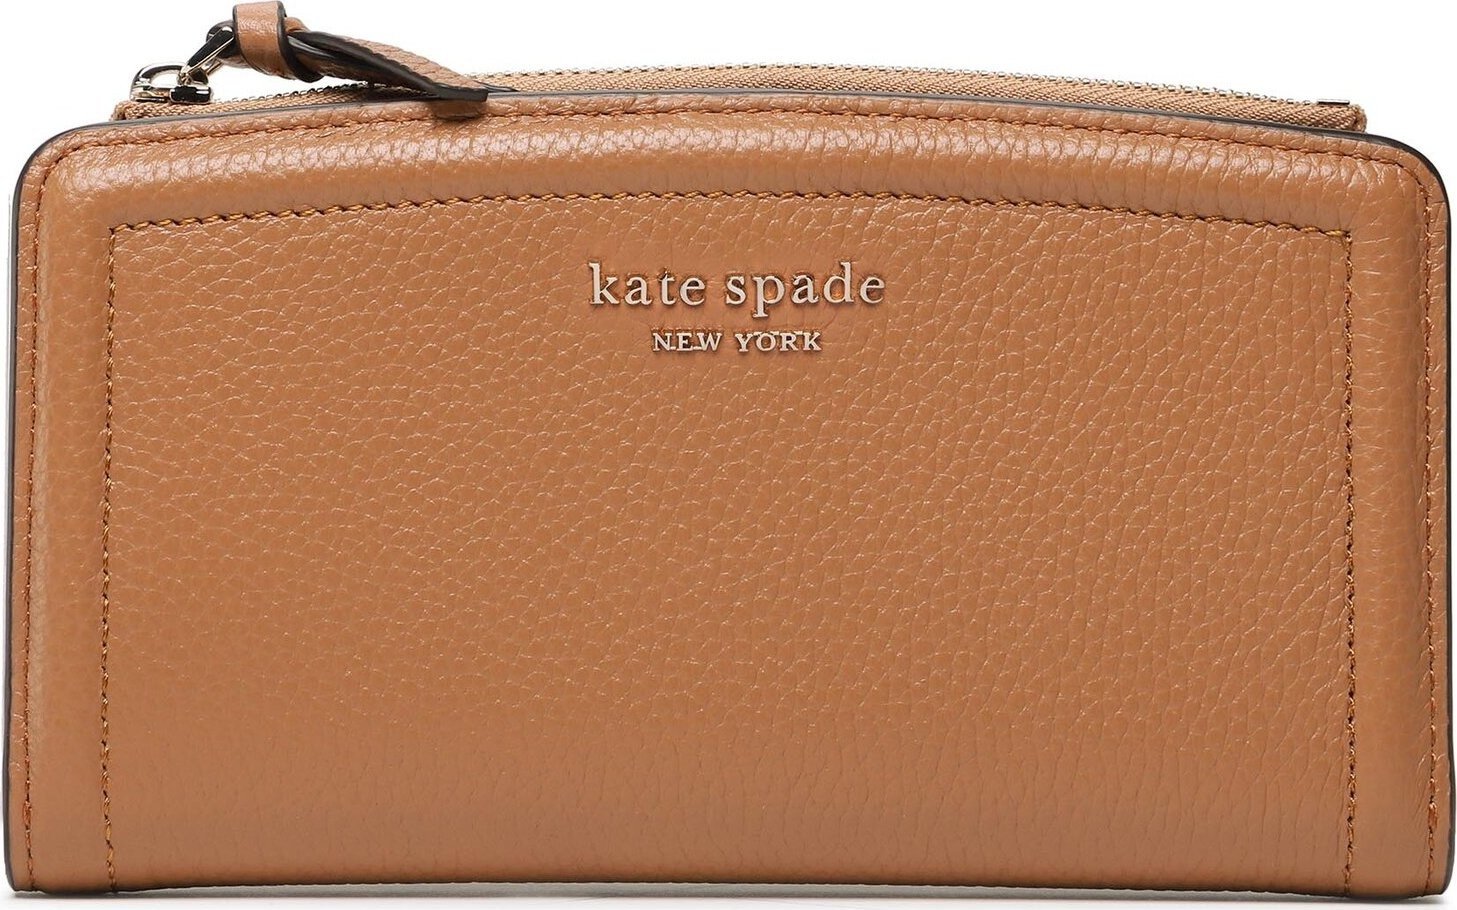 Velká dámská peněženka Kate Spade Zip Slim Wallet K5613 Bungalow 200